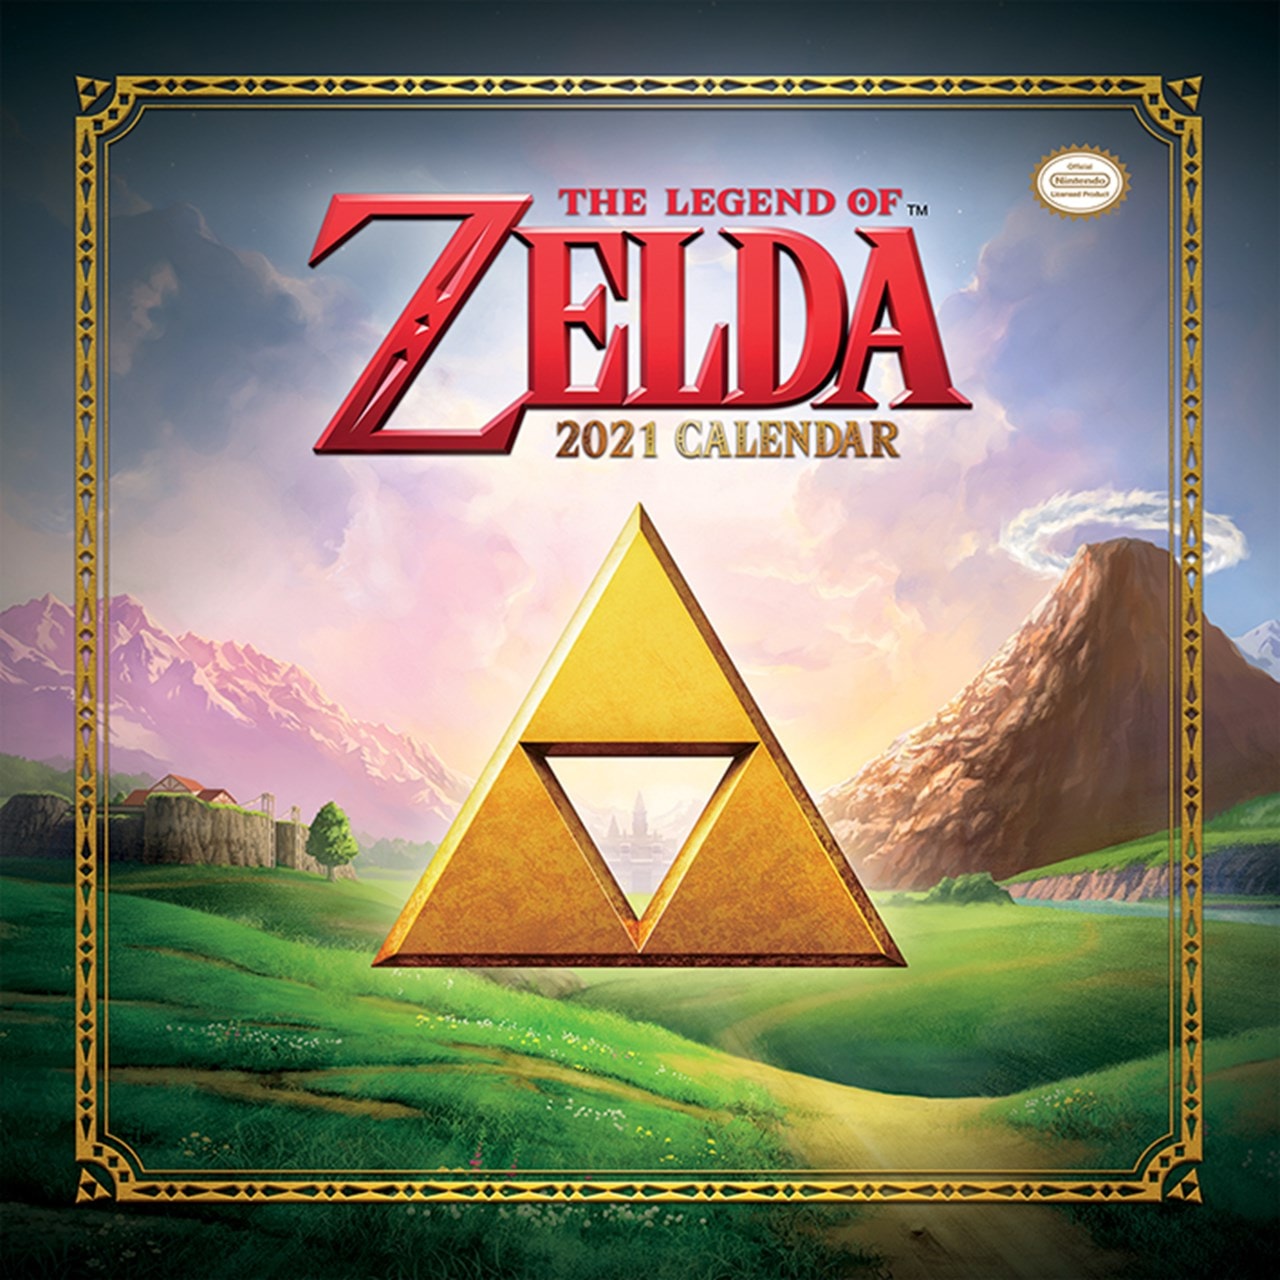 The Legend Of Zelda Square 2021 Calendar Calendars Free shipping